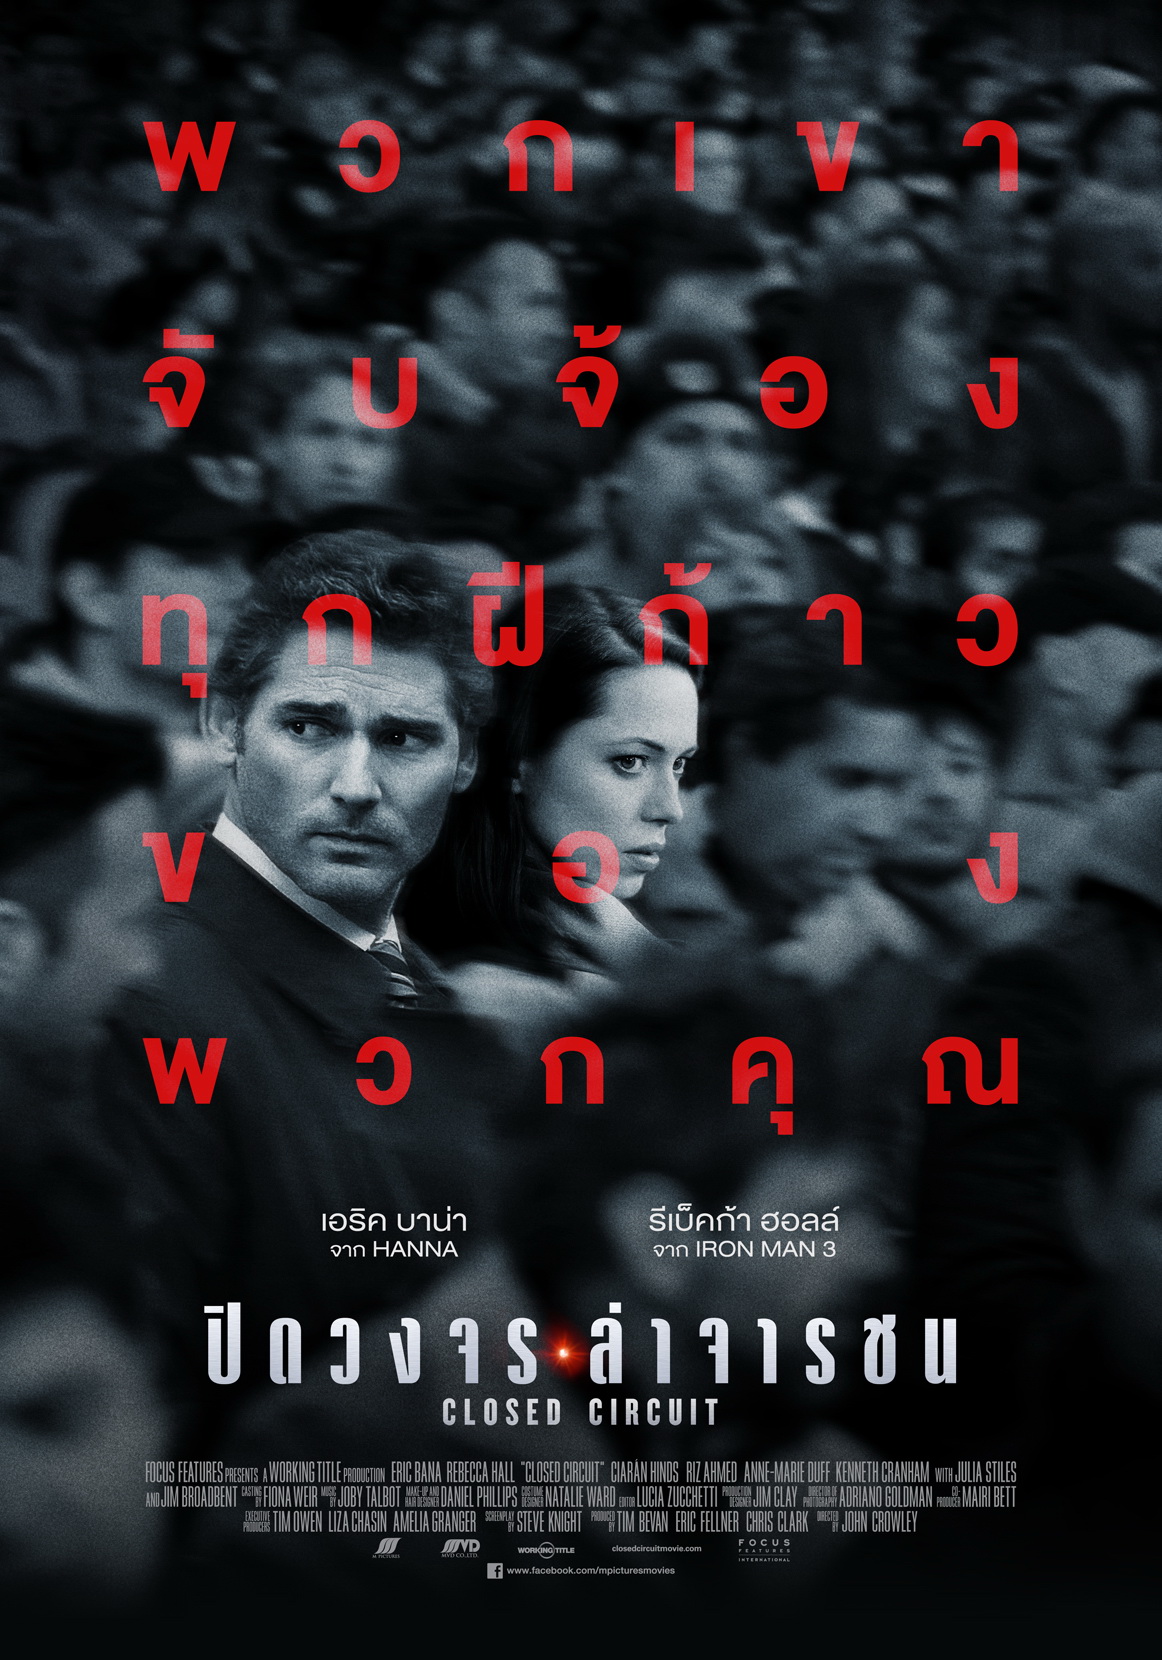 ดูหนังออนไลน์ฟรี Closed Circuit (2013) ปิดวงจร ล่าจารชน [[Sub Thai]]